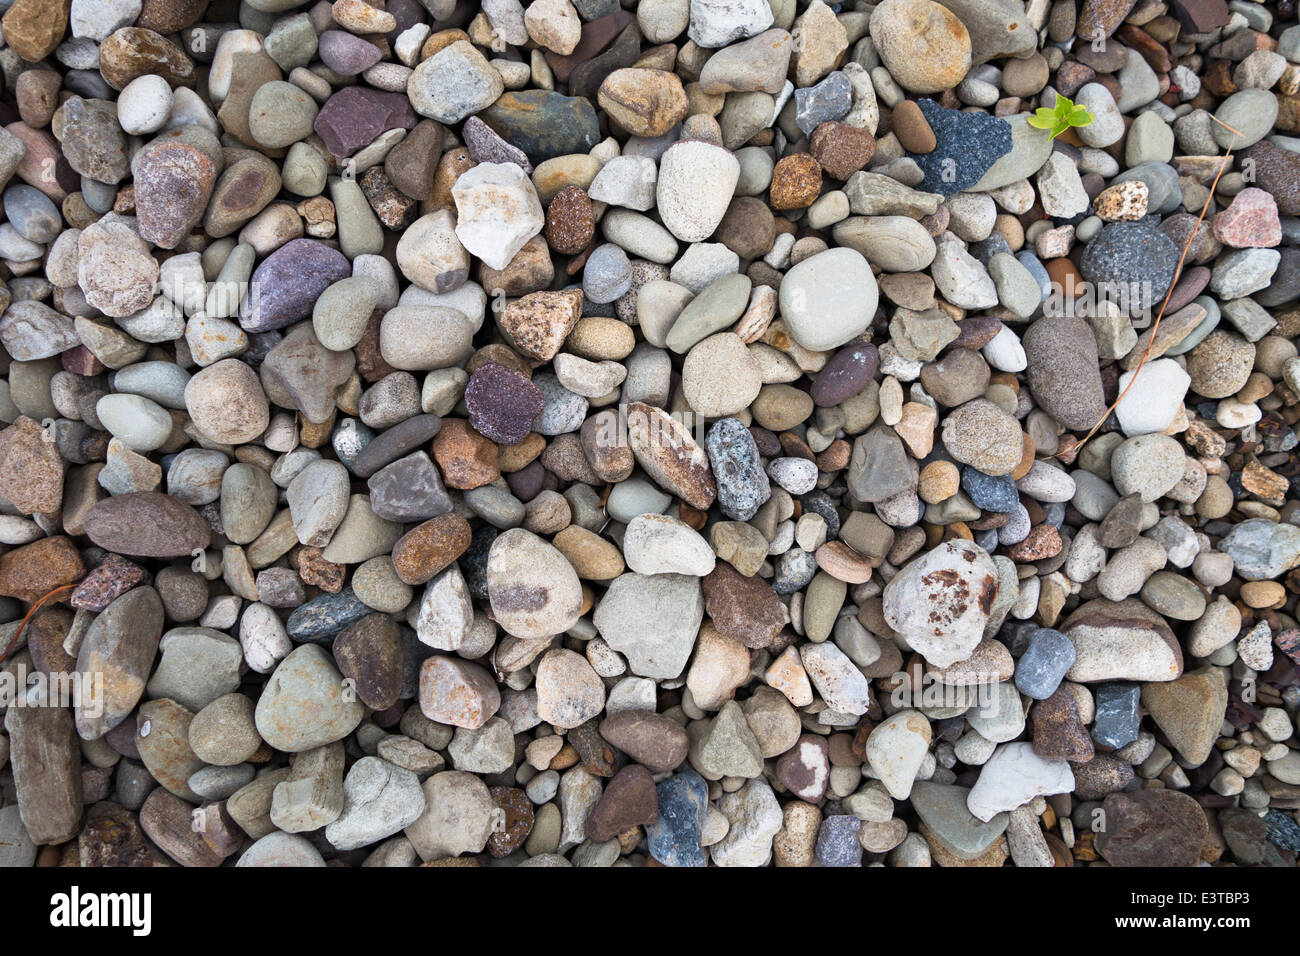 Beaucoup de pierres lisses et de cailloux de différentes couleurs, formes et tailles Banque D'Images